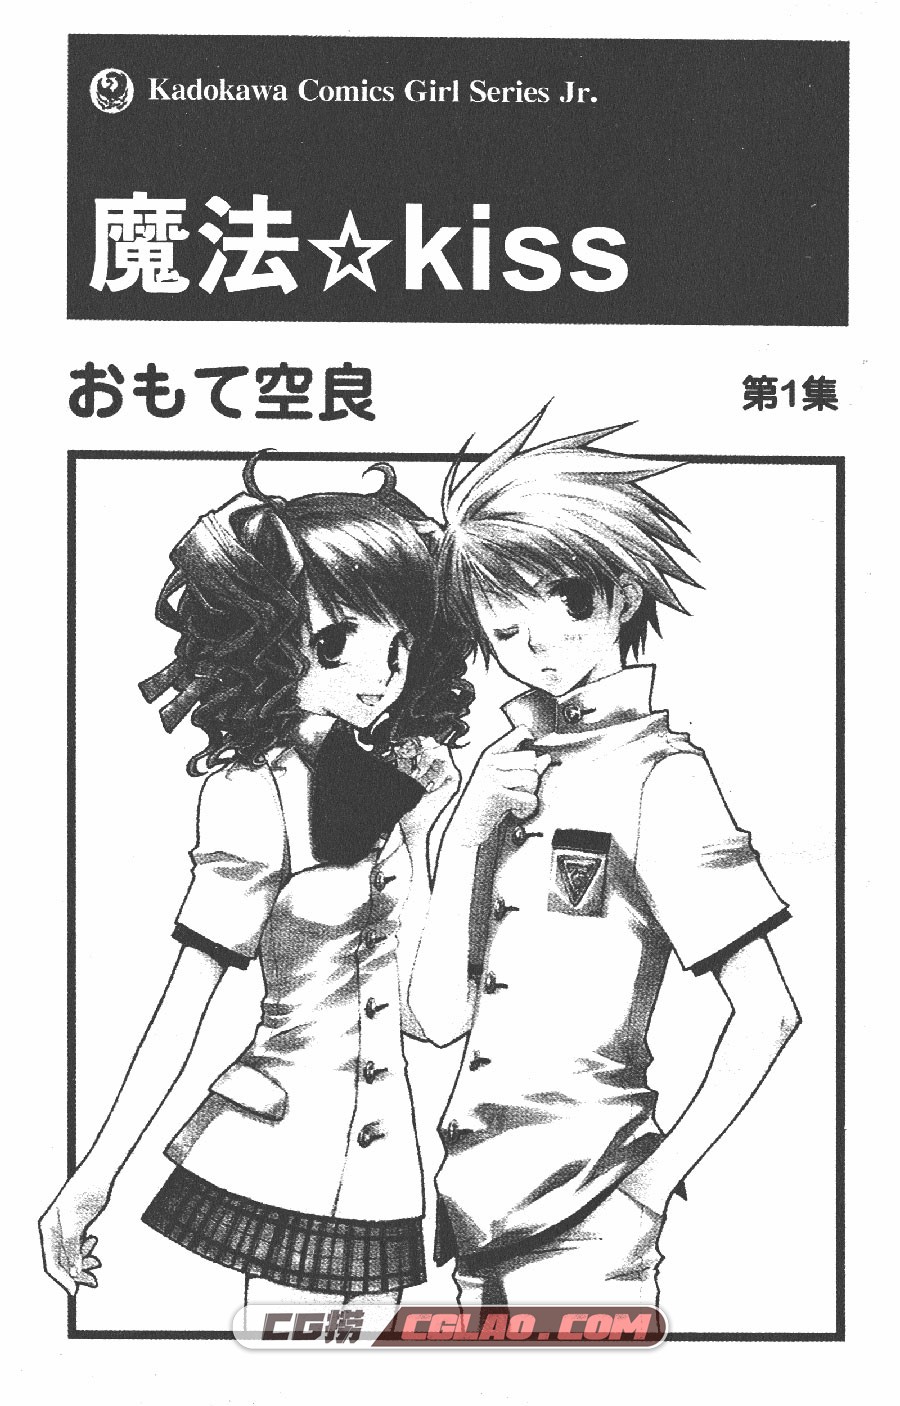 魔法☆Kiss おもて空良 1-3卷 漫画全集完结下载 百度网盘,Kiss_01_001.jpg